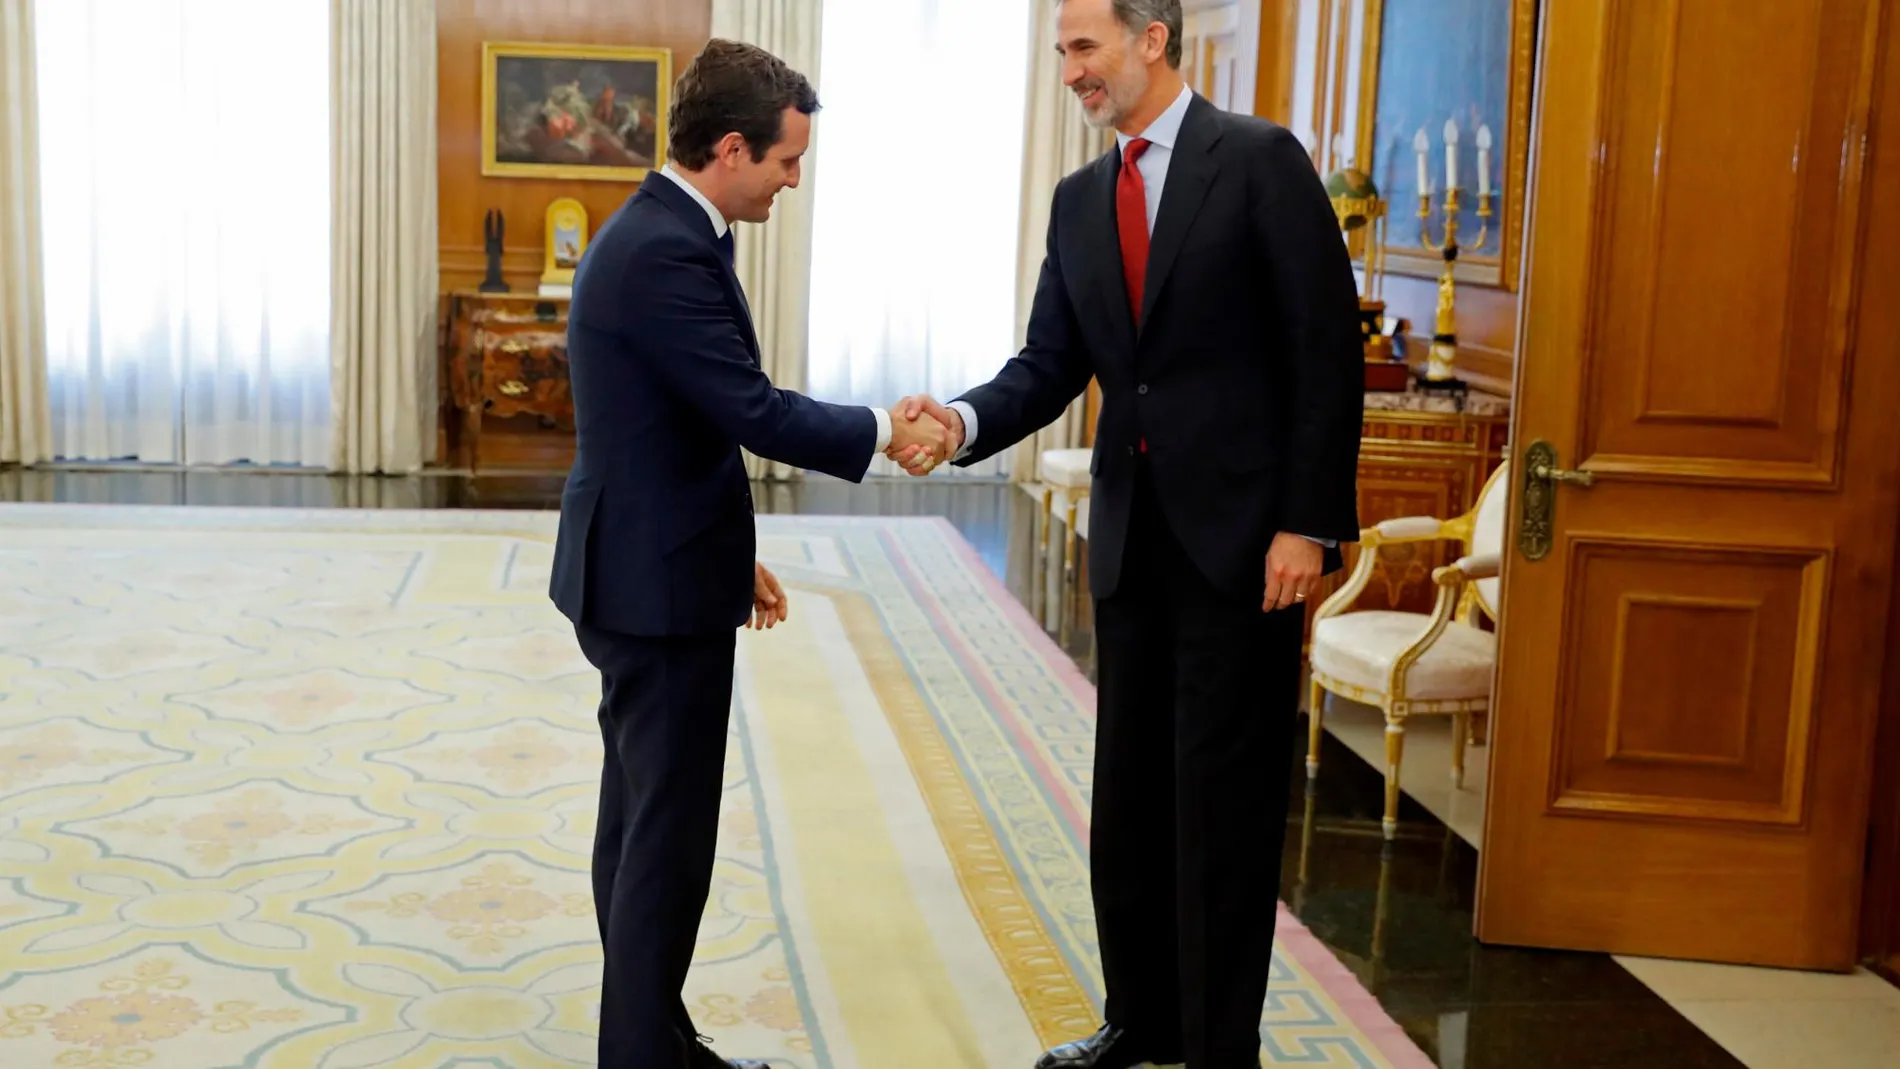 El Rey Felipe VI saluda al presidente del Partido Popular, Pablo Casado, esta tarde en el Palacio de la Zarzuela/Foto: Efe/Juan Carlos Hidalgo